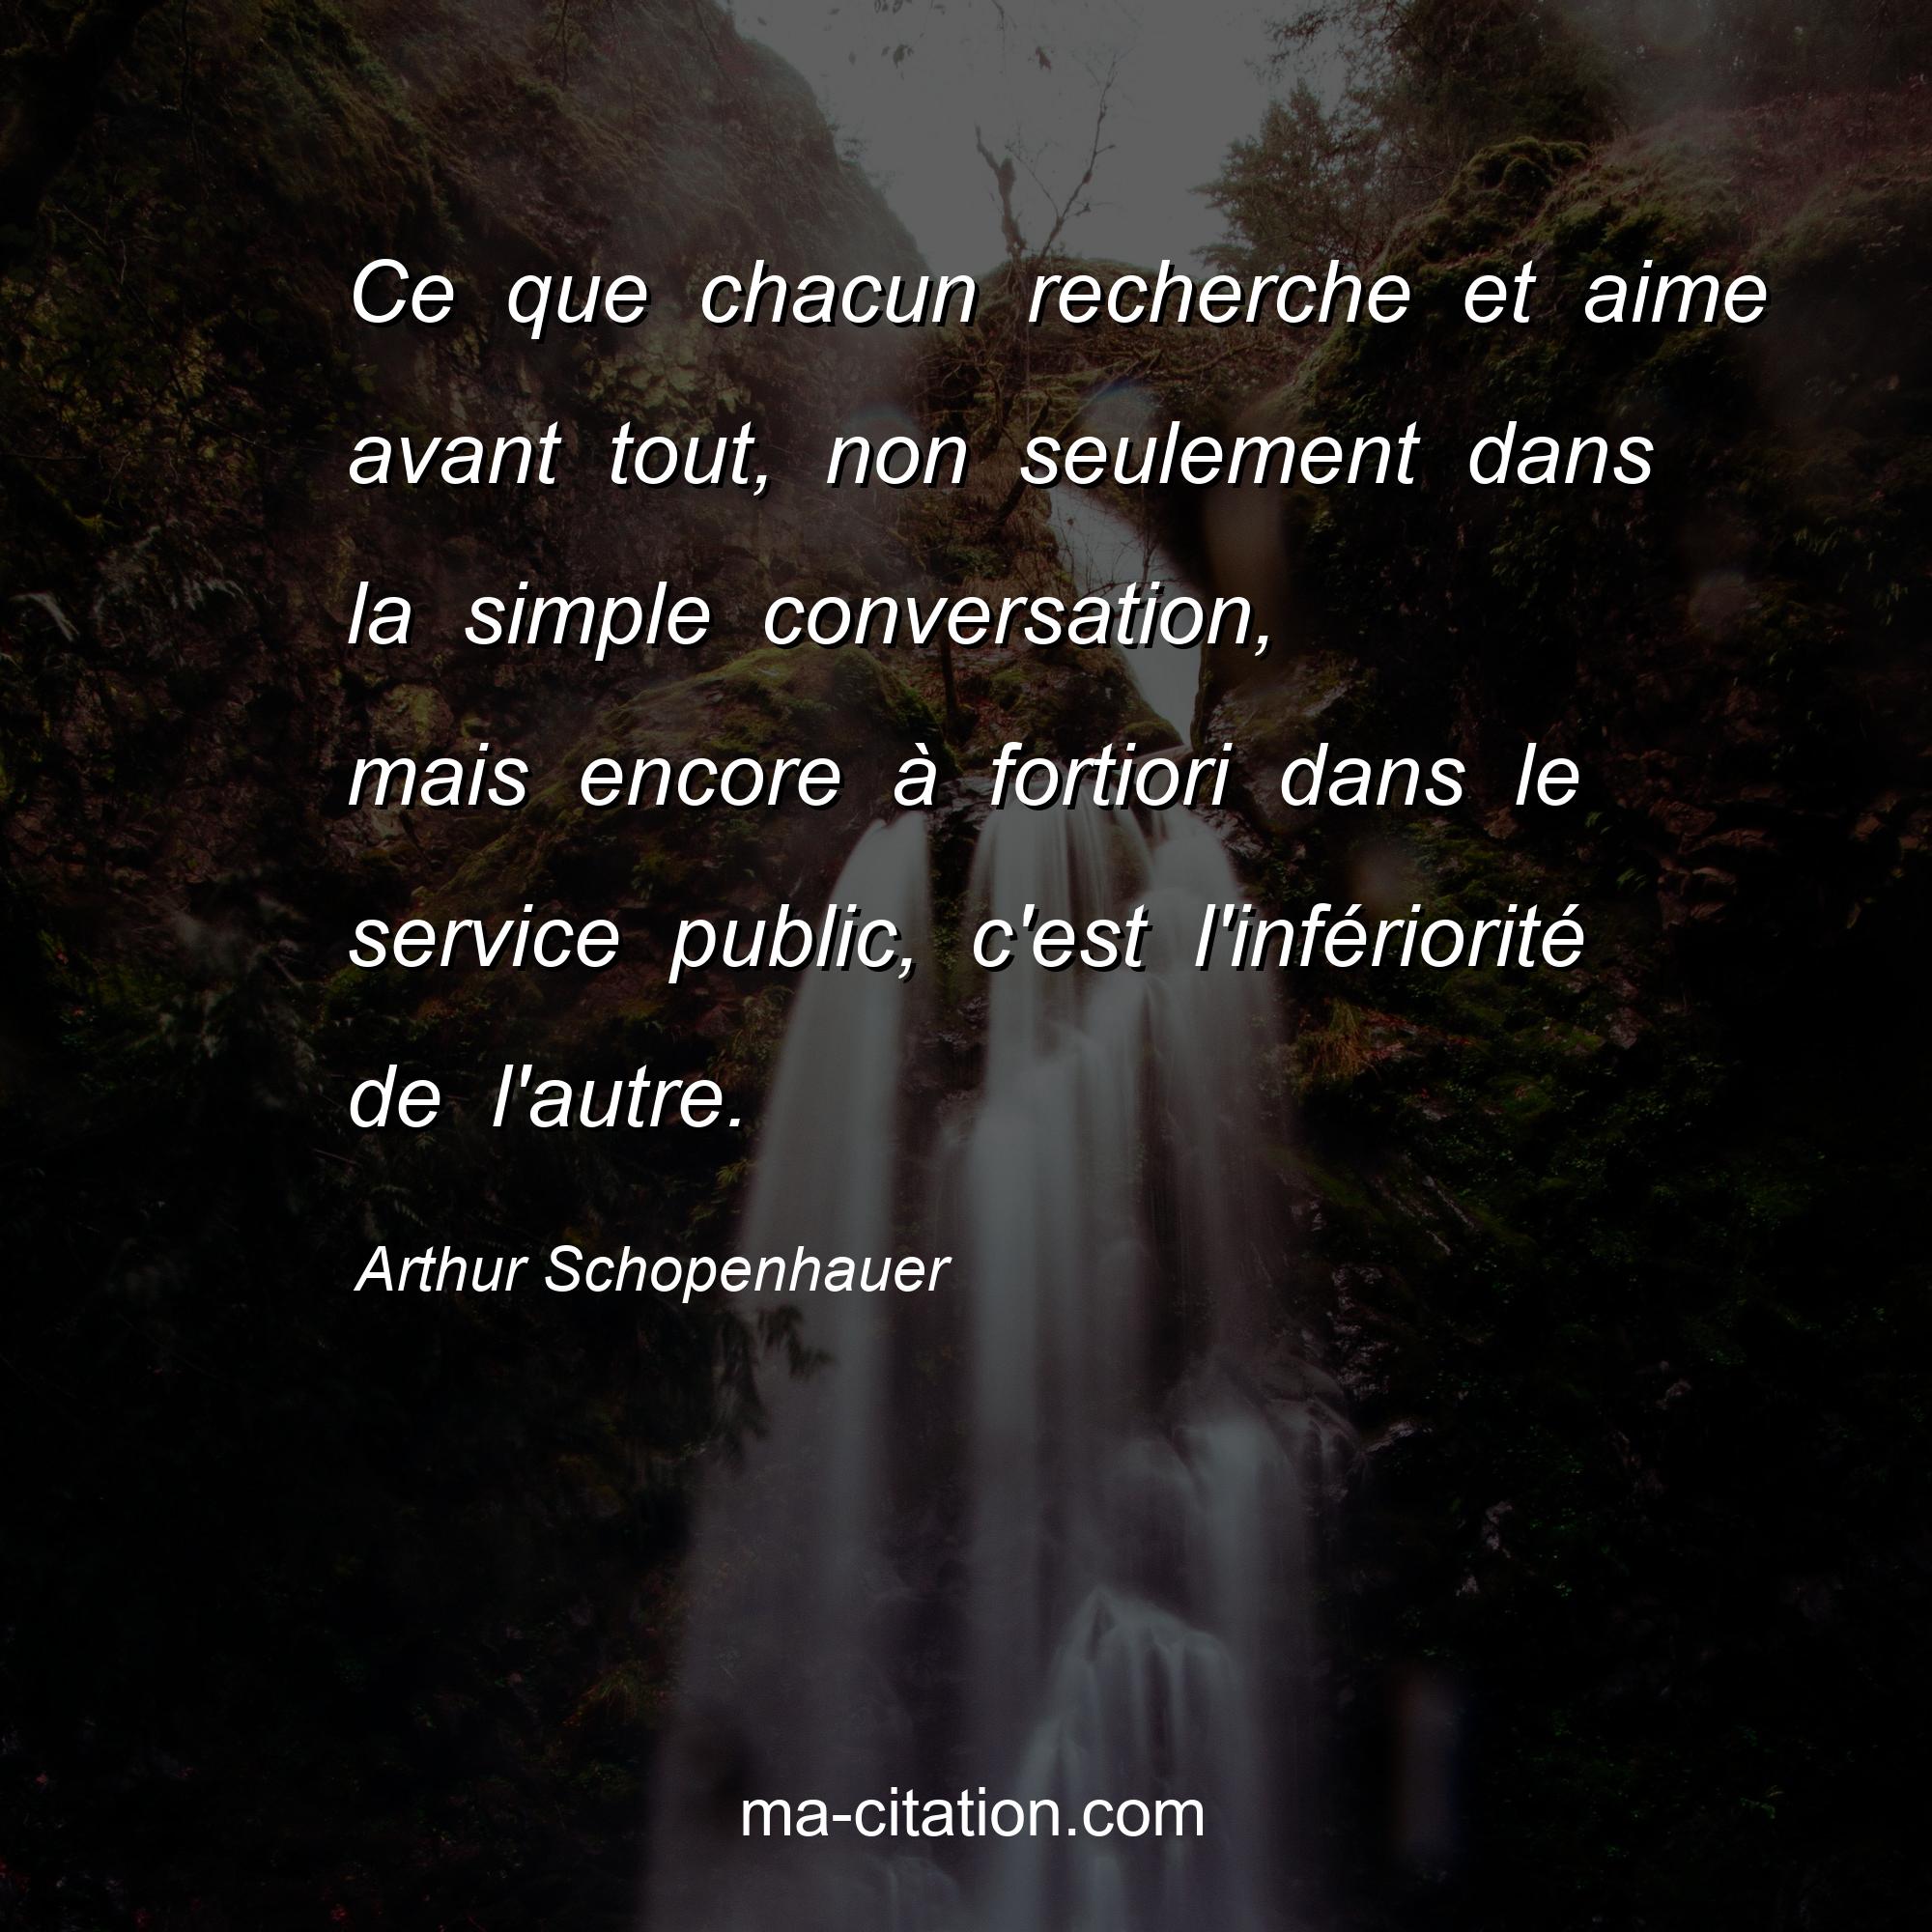 Arthur Schopenhauer : Ce que chacun recherche et aime avant tout, non seulement dans la simple conversation, mais encore à fortiori dans le service public, c'est l'infériorité de l'autre.